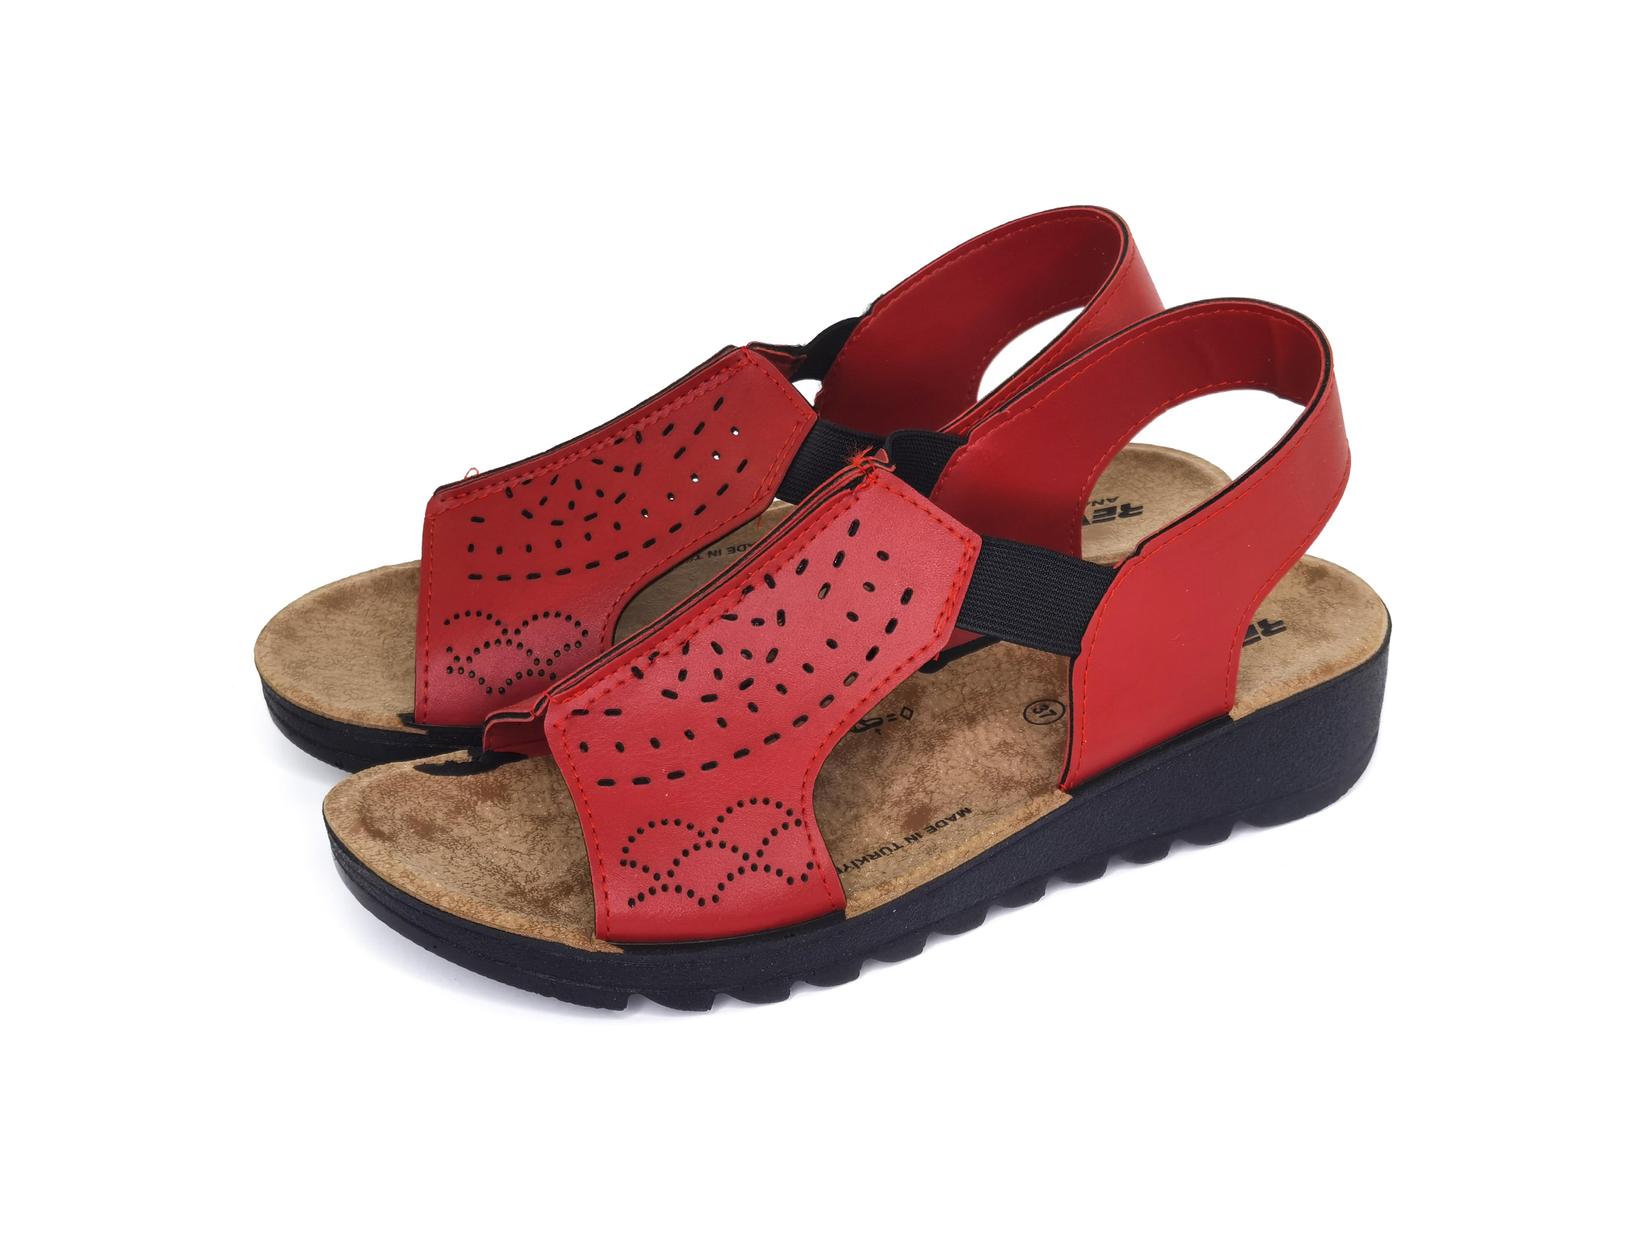 Selected image for MISMI Ženske sandale crvene